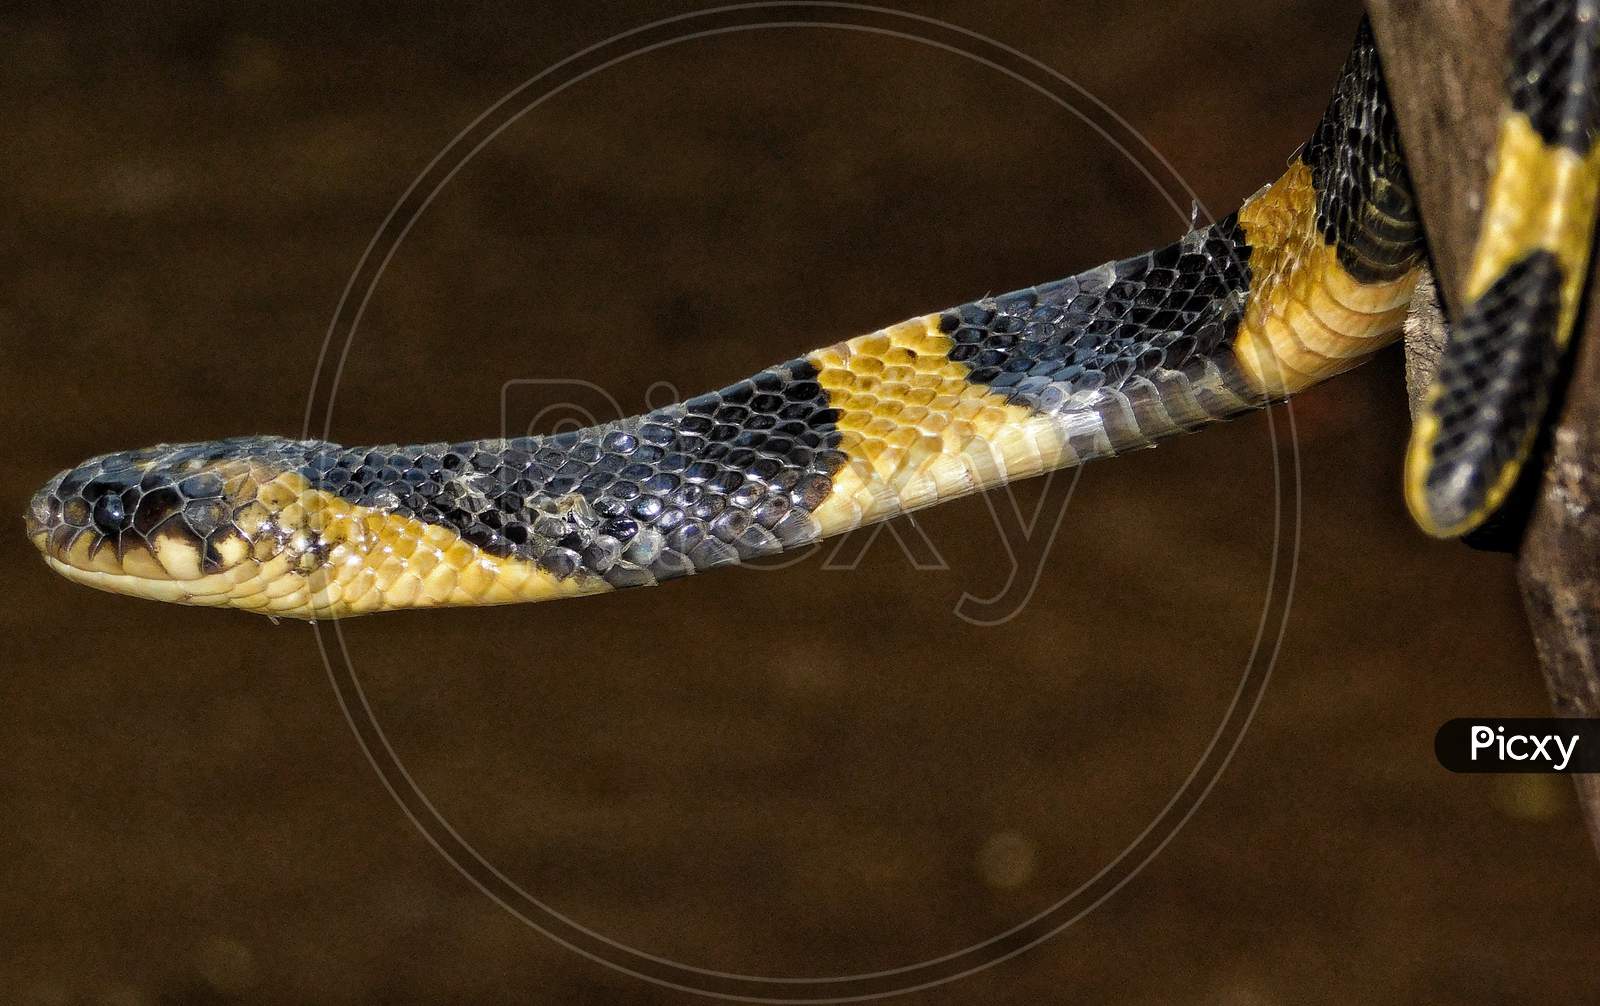 The banded krait snake.